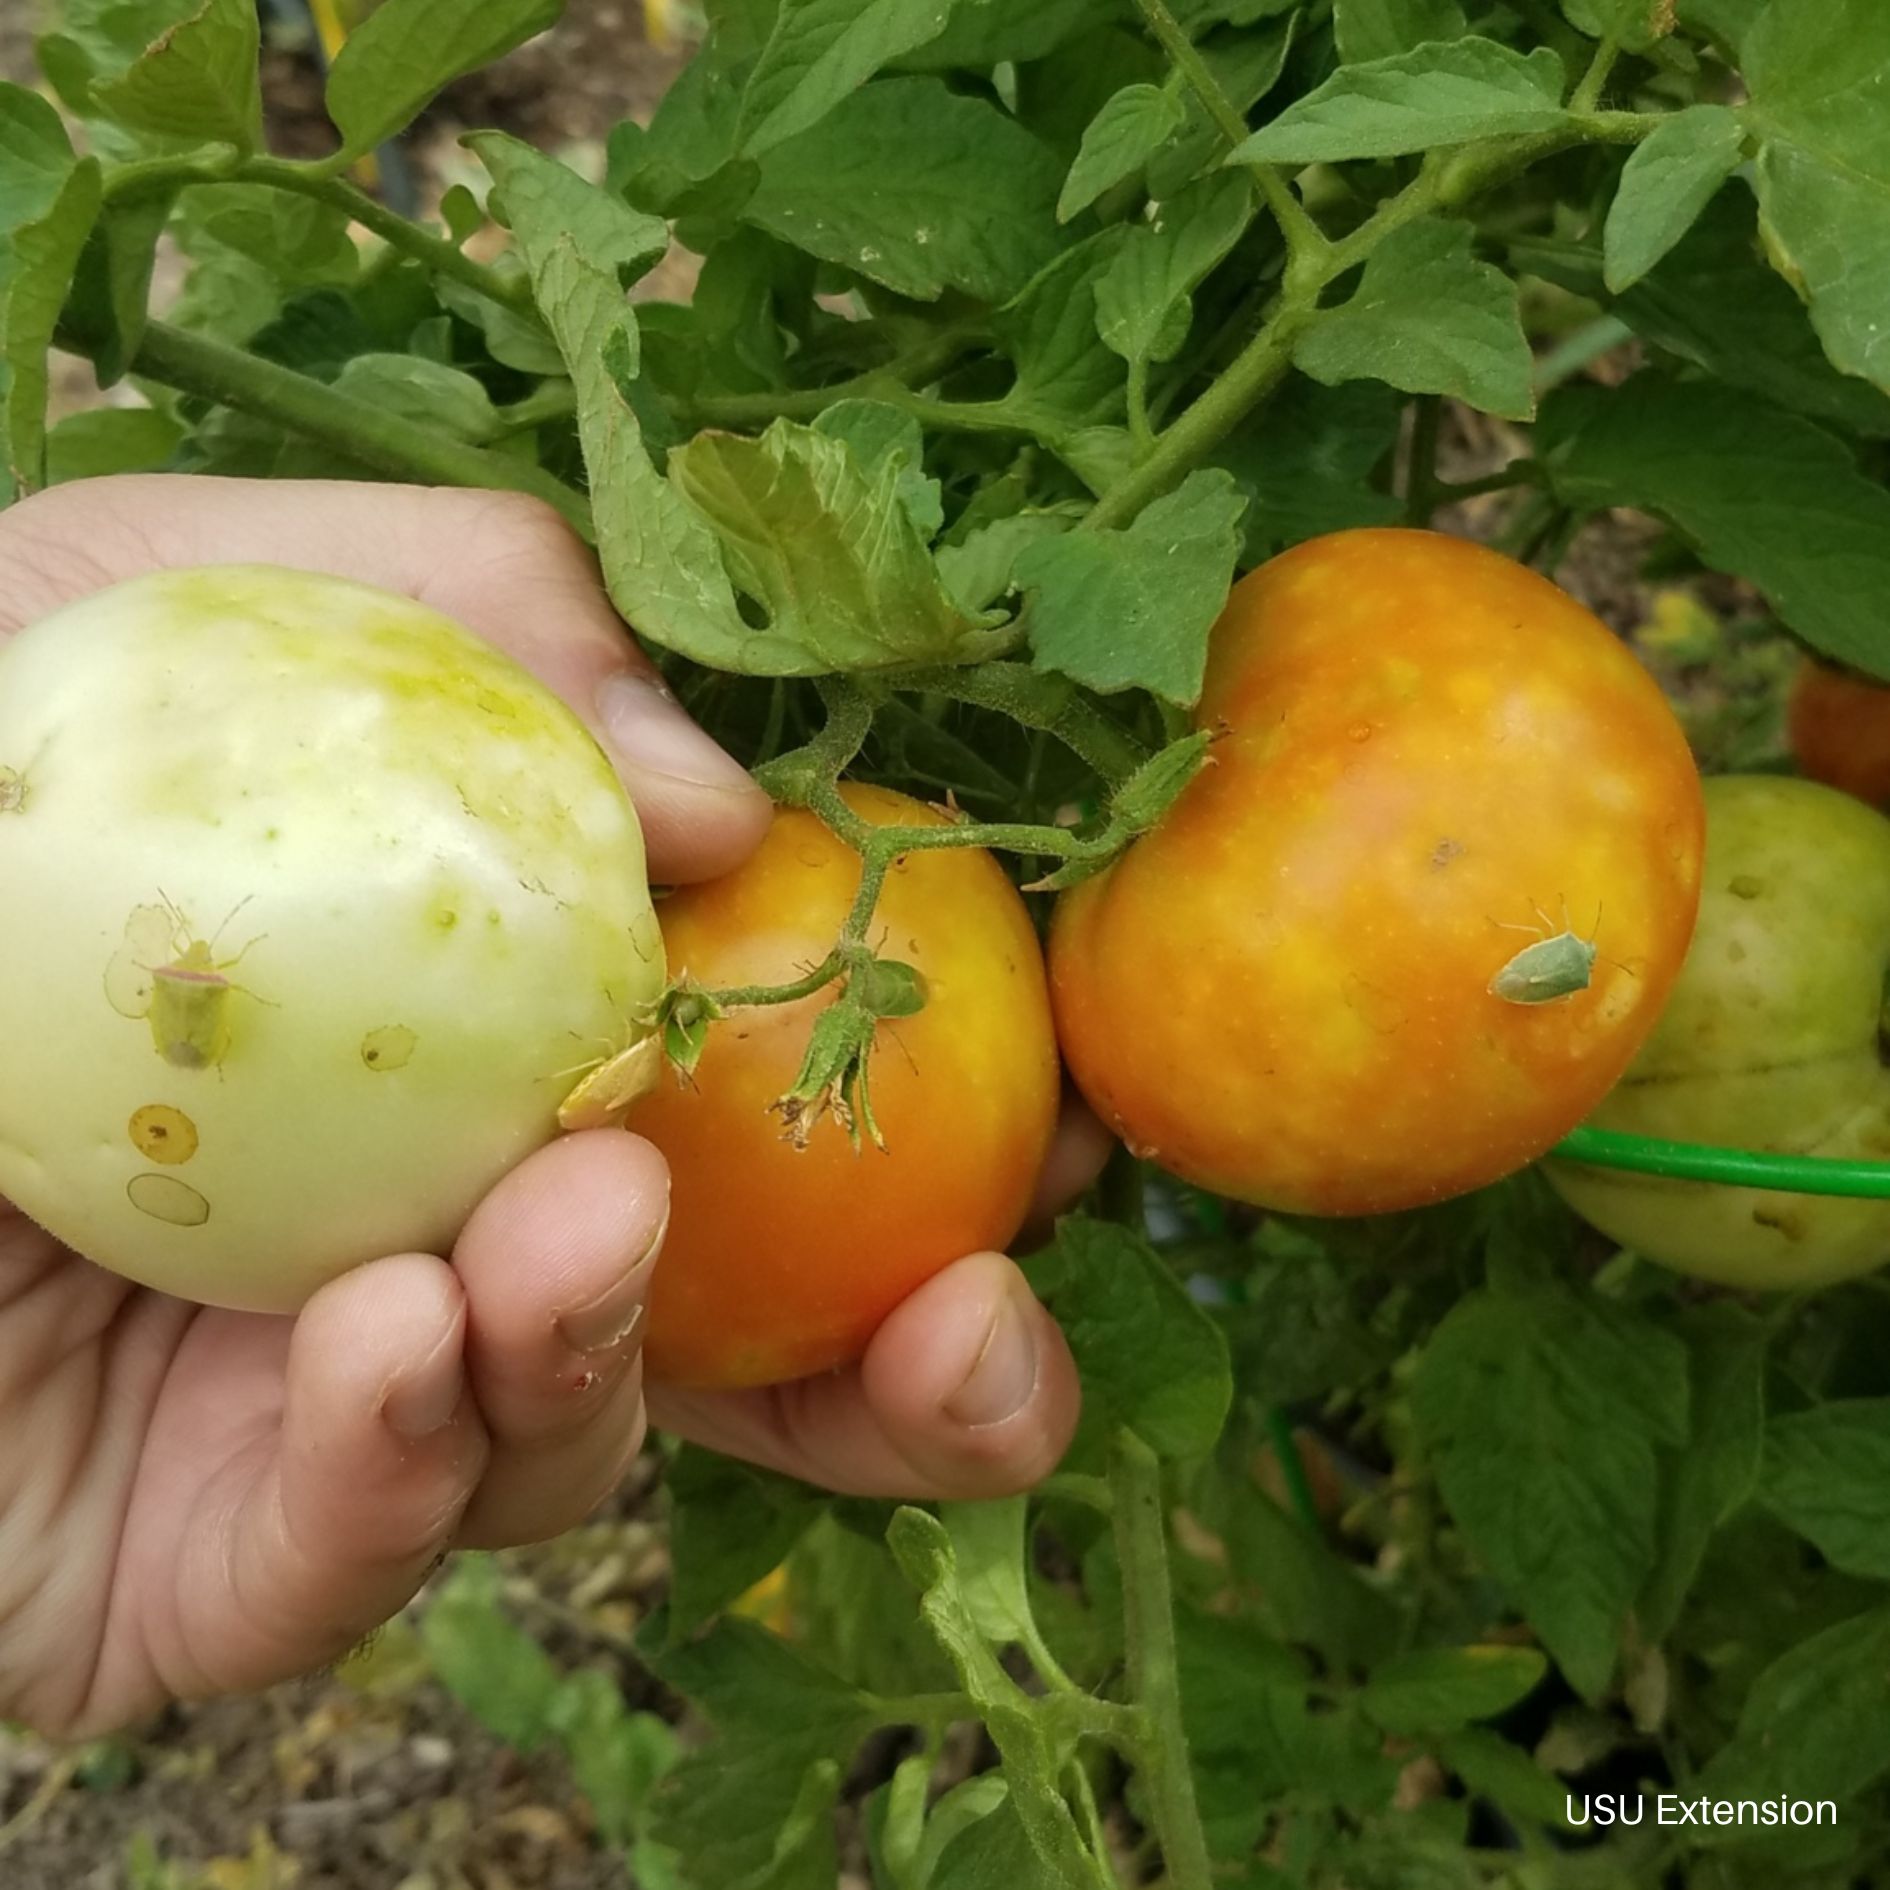 Stink Bug Feeding Damage on Tomatoes